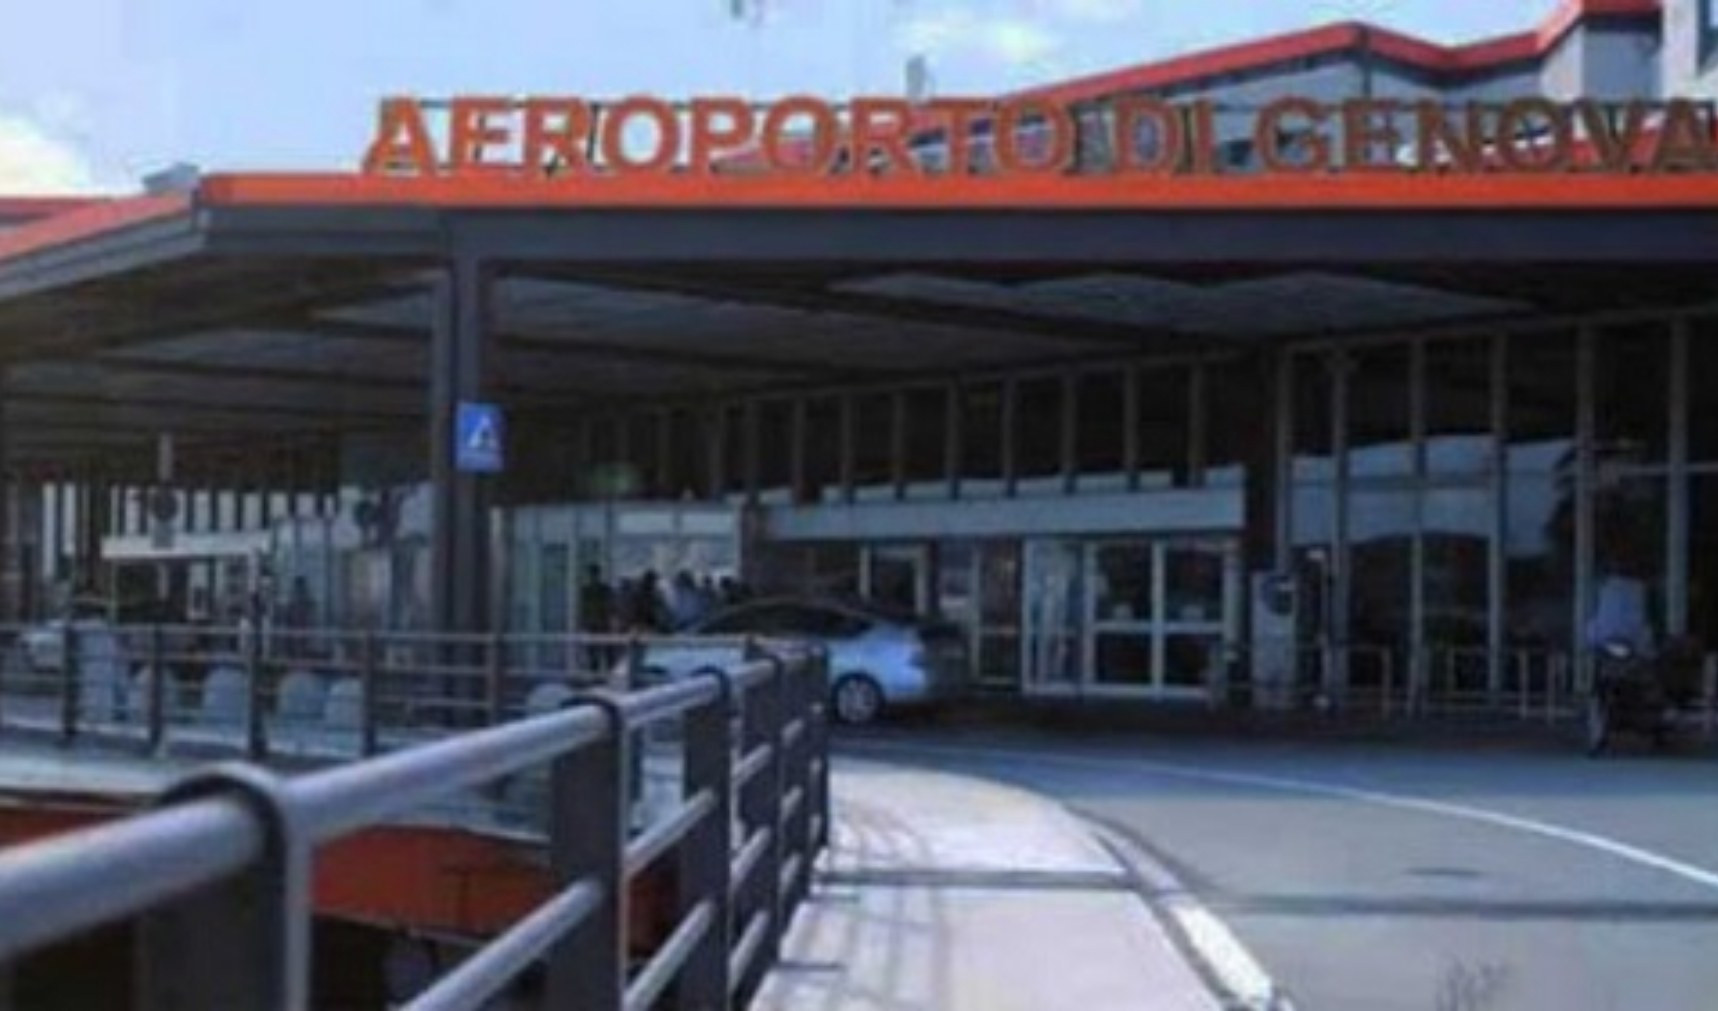 Aeroporto di Genova: nuove nomine, strada in salita